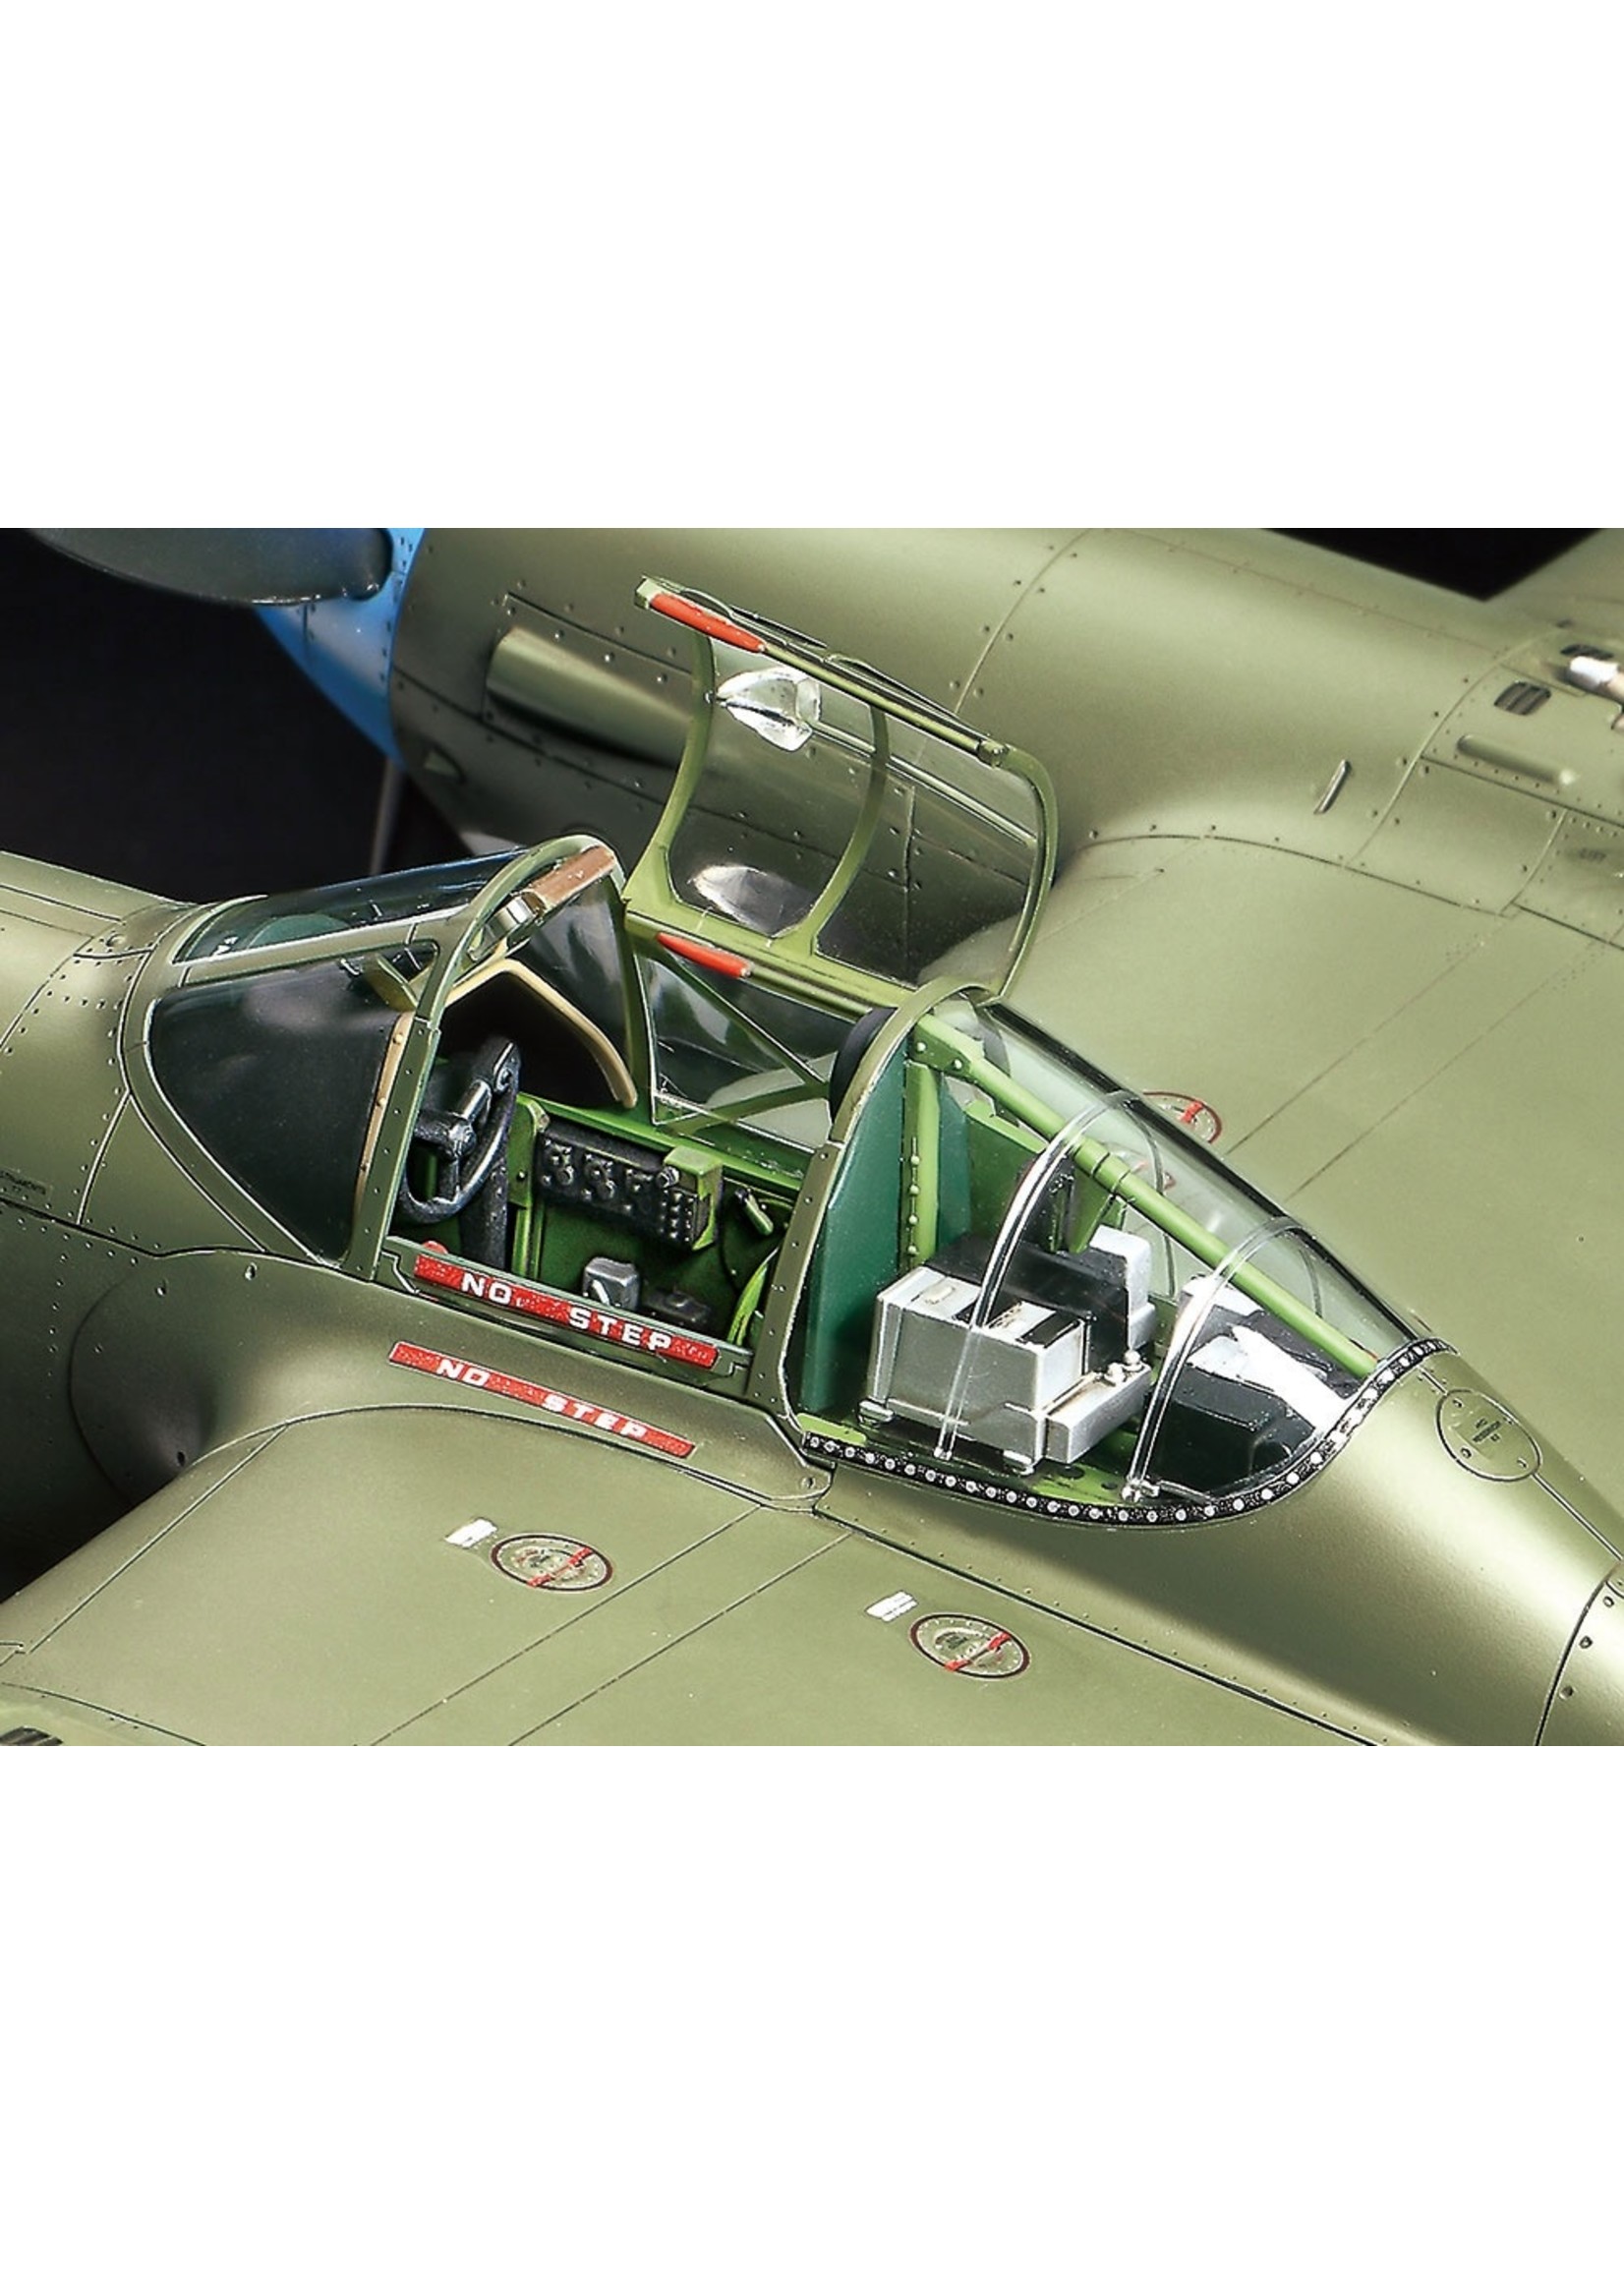 Tamiya P-38 F/G Lightning 1:48 Cockpit Part 1 